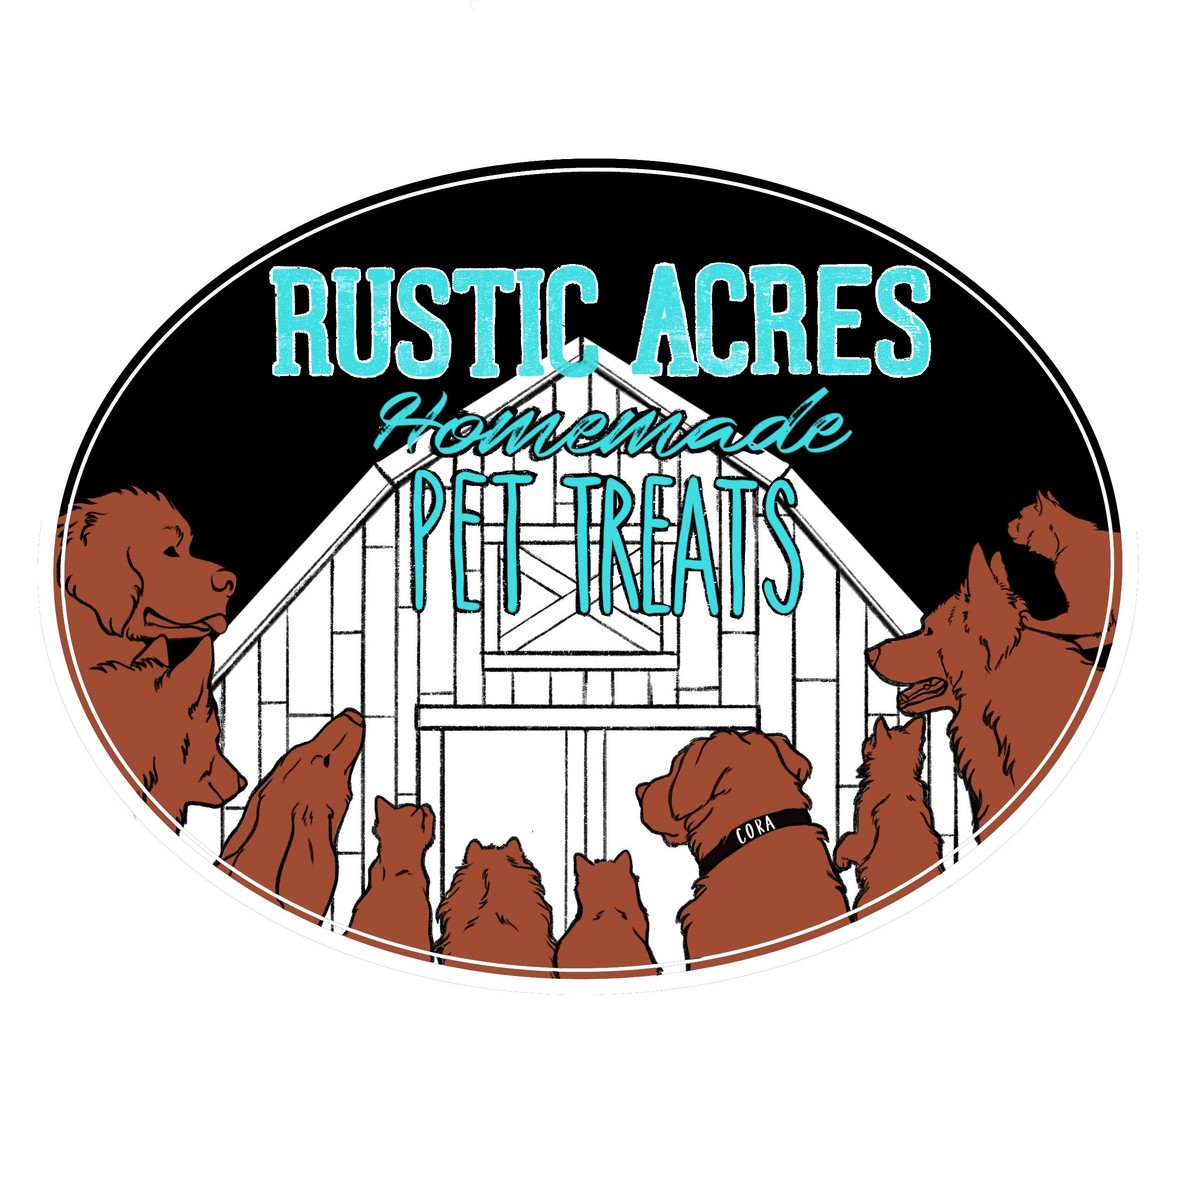 Rustic Acres Pet Treats